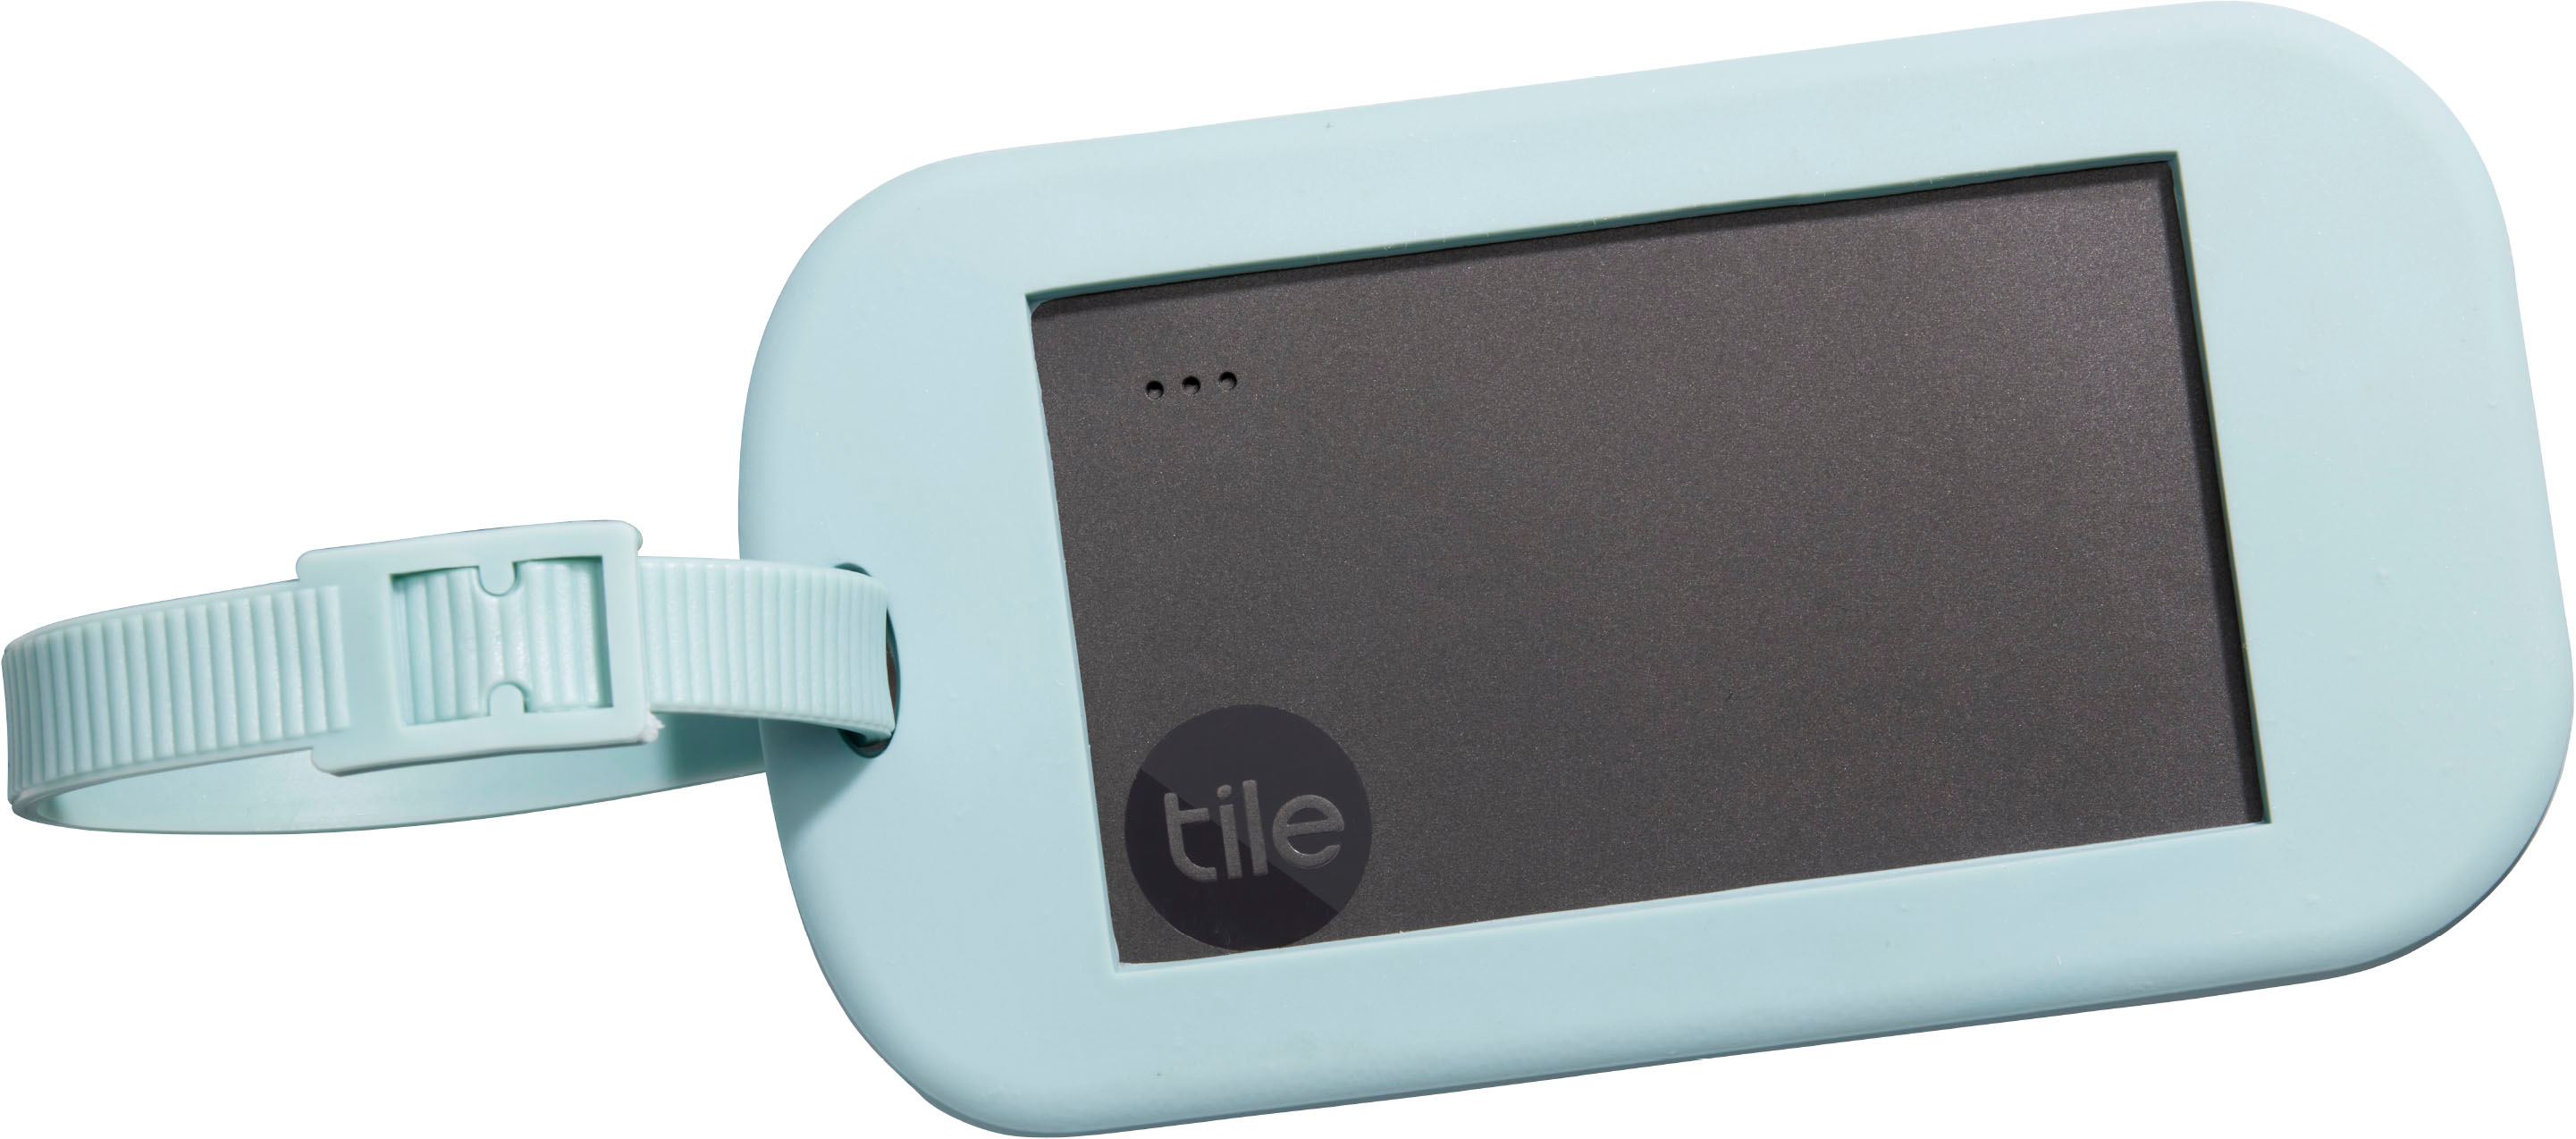 Tile Performance Pack (2022) 2 Pack (1 Pro, 1 Slim)- Bluetooth Tracker,  Item Locator & Finder for Keys, Wallets & More Black RE-48002 - Best Buy